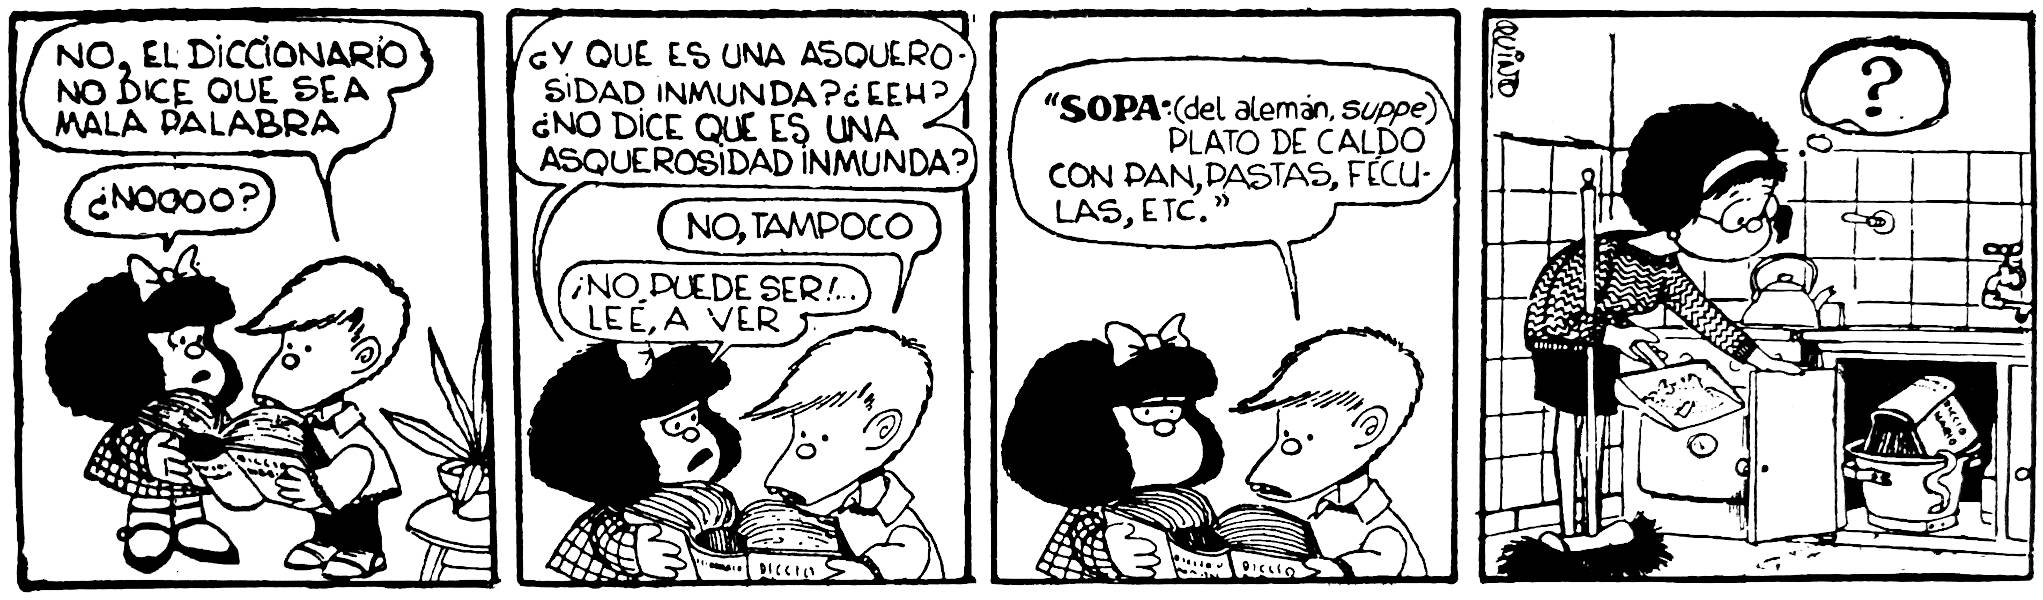 Tira de Mafalda quejándose de que el diccionario no diga que la sopa es algo inmundo